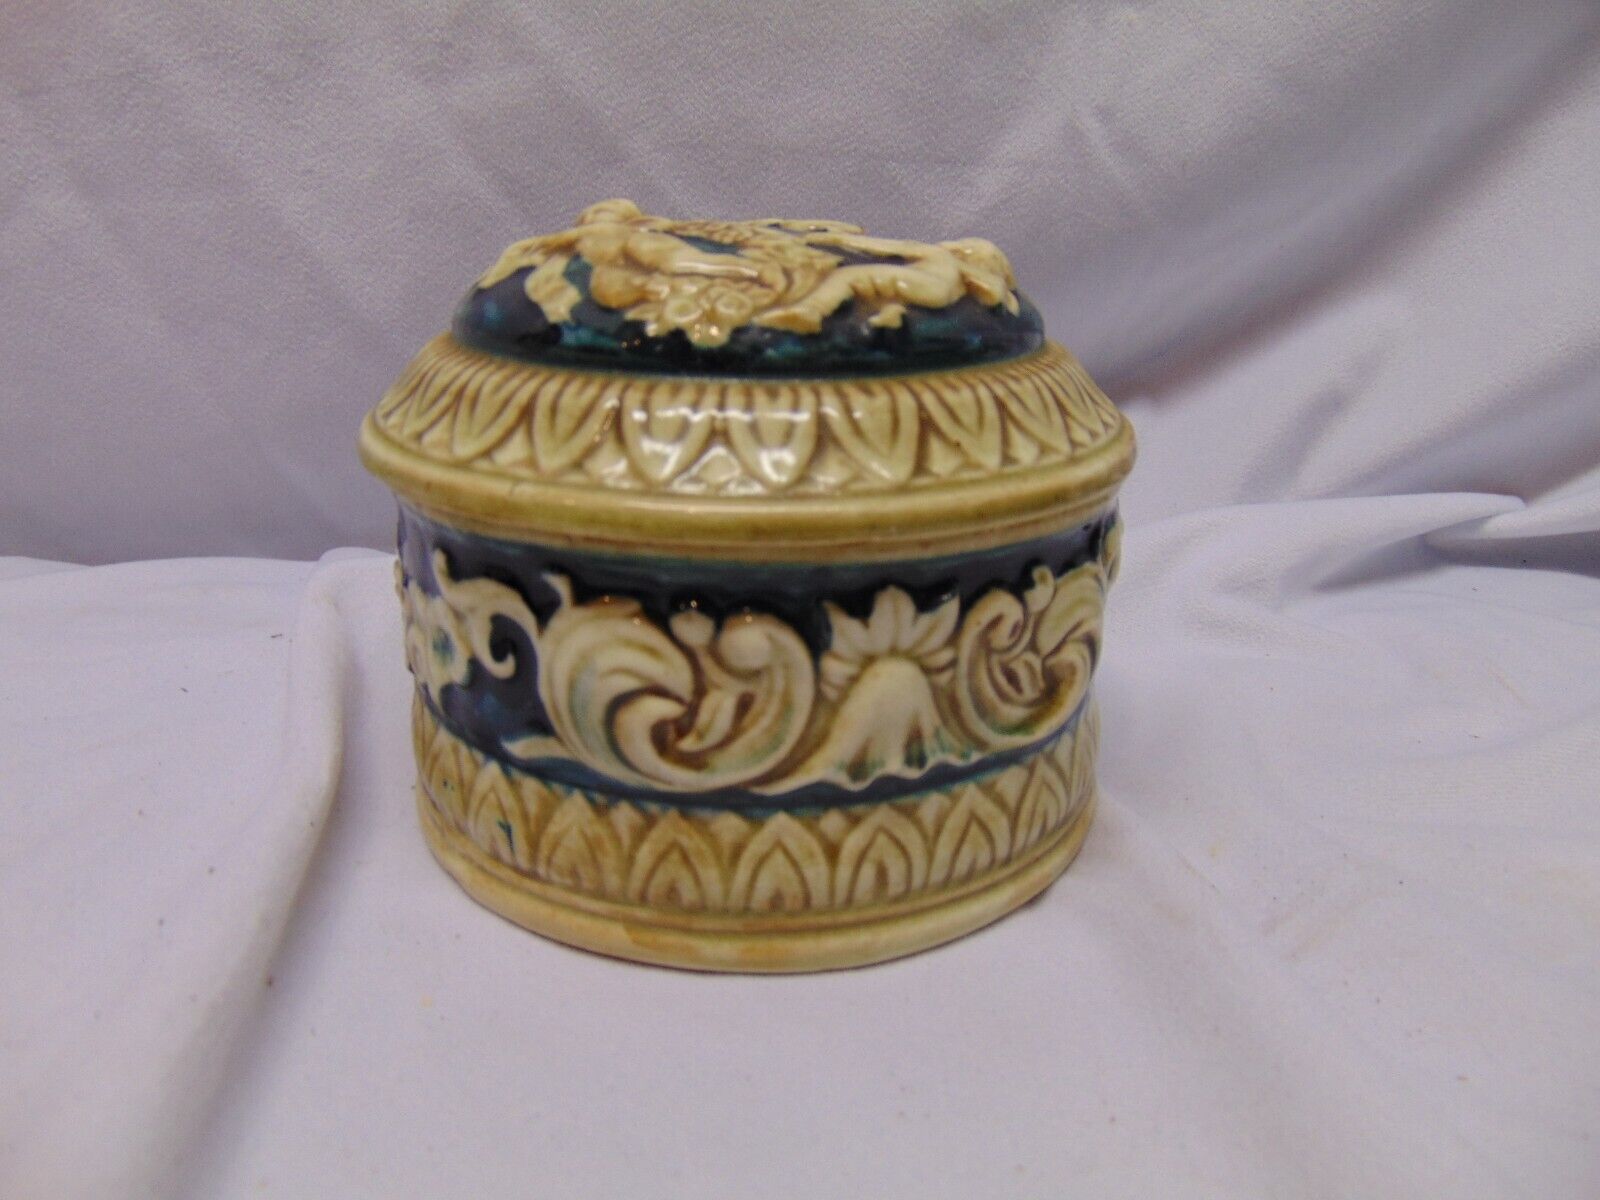 Vintage ceramic Morikin Ware covered bowl / jar blue Angel design from Japan